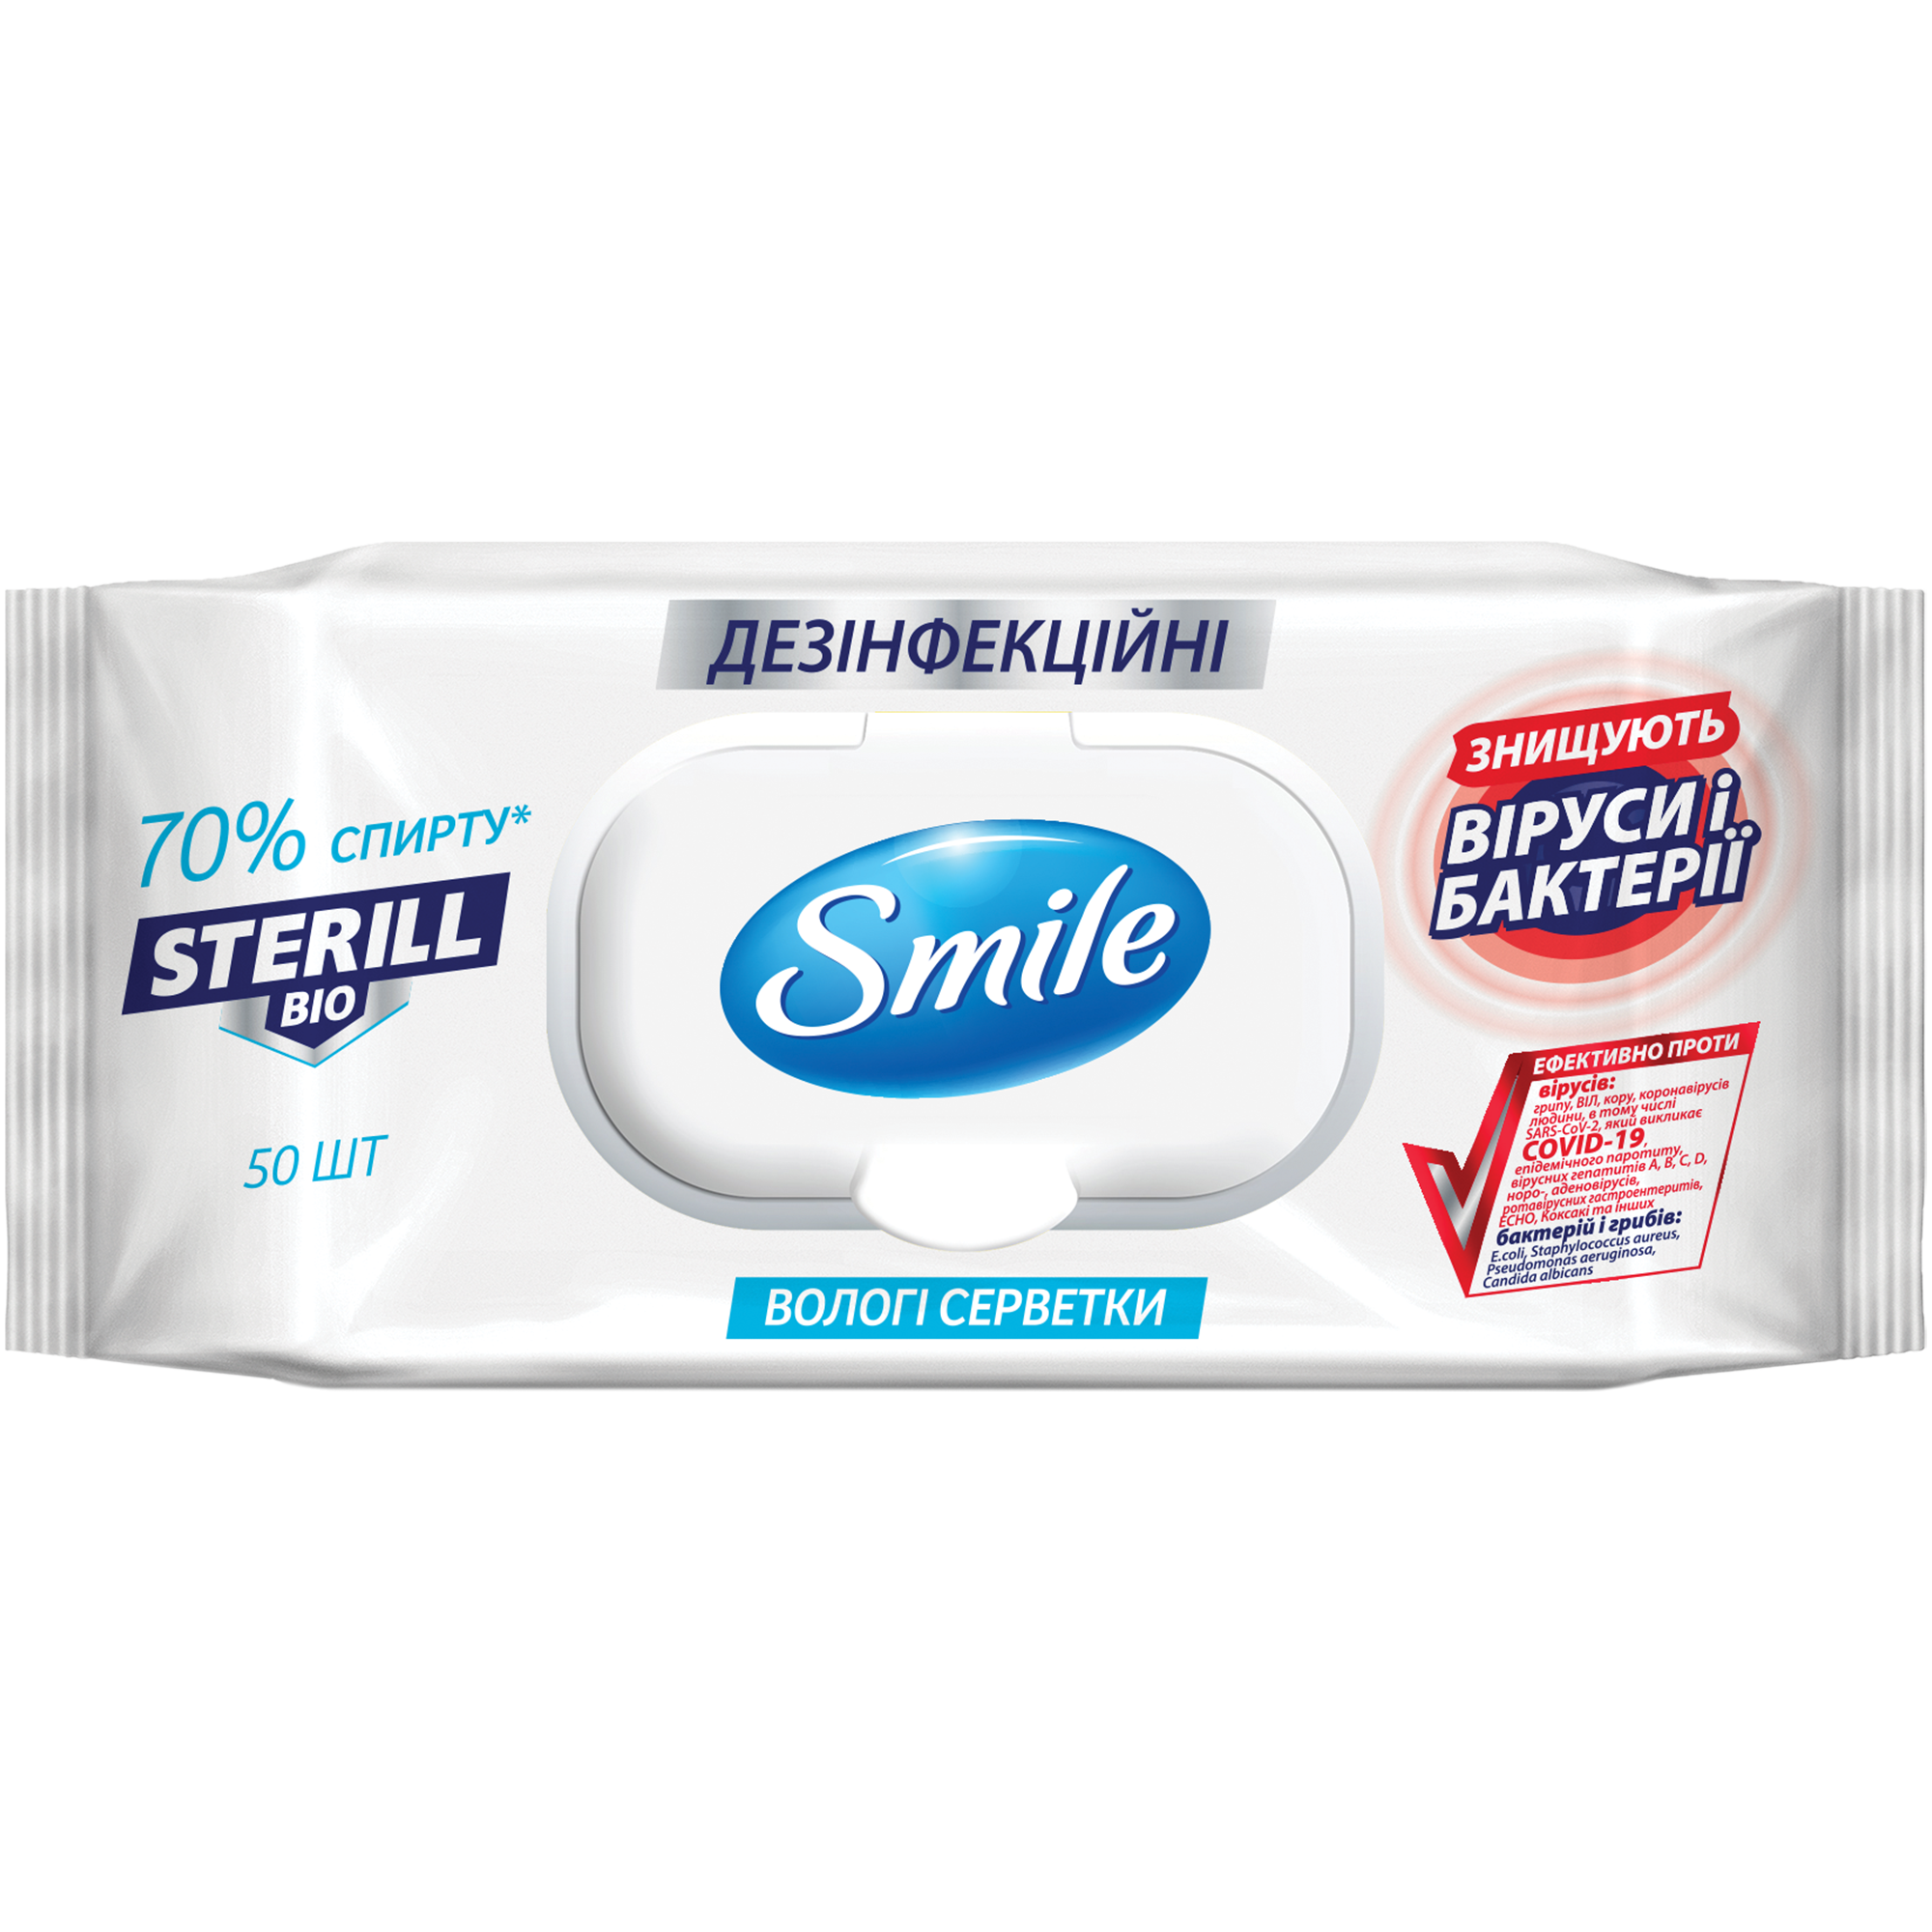 Вологі серветки дезінфекційні Smile Sterill Bio 50 шт. - фото 1